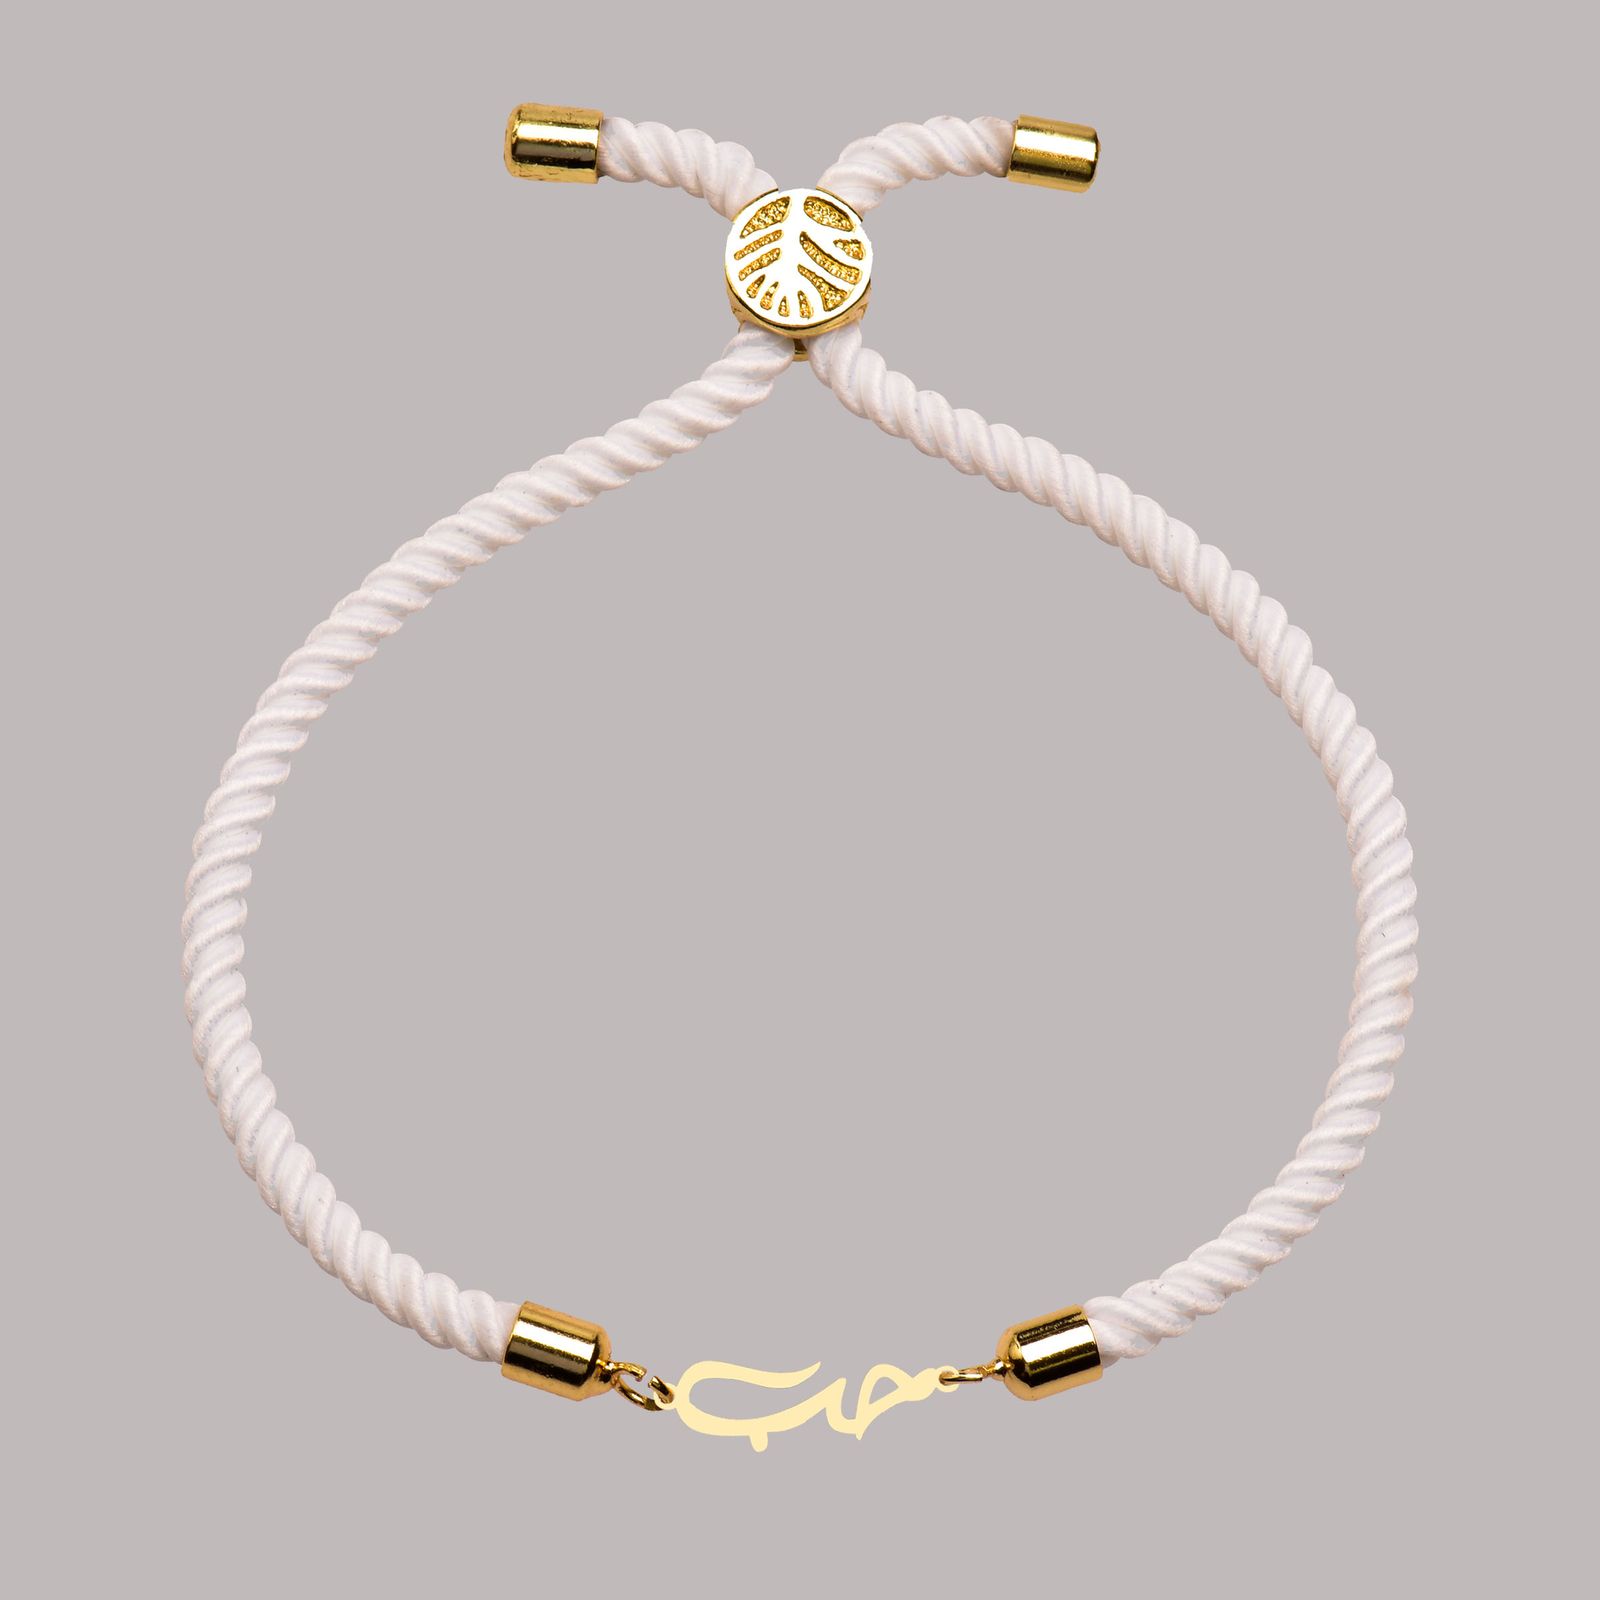 دستبند طلا 18 عیار زنانه کرابو طرح حب مدل Kr102225 -  - 2